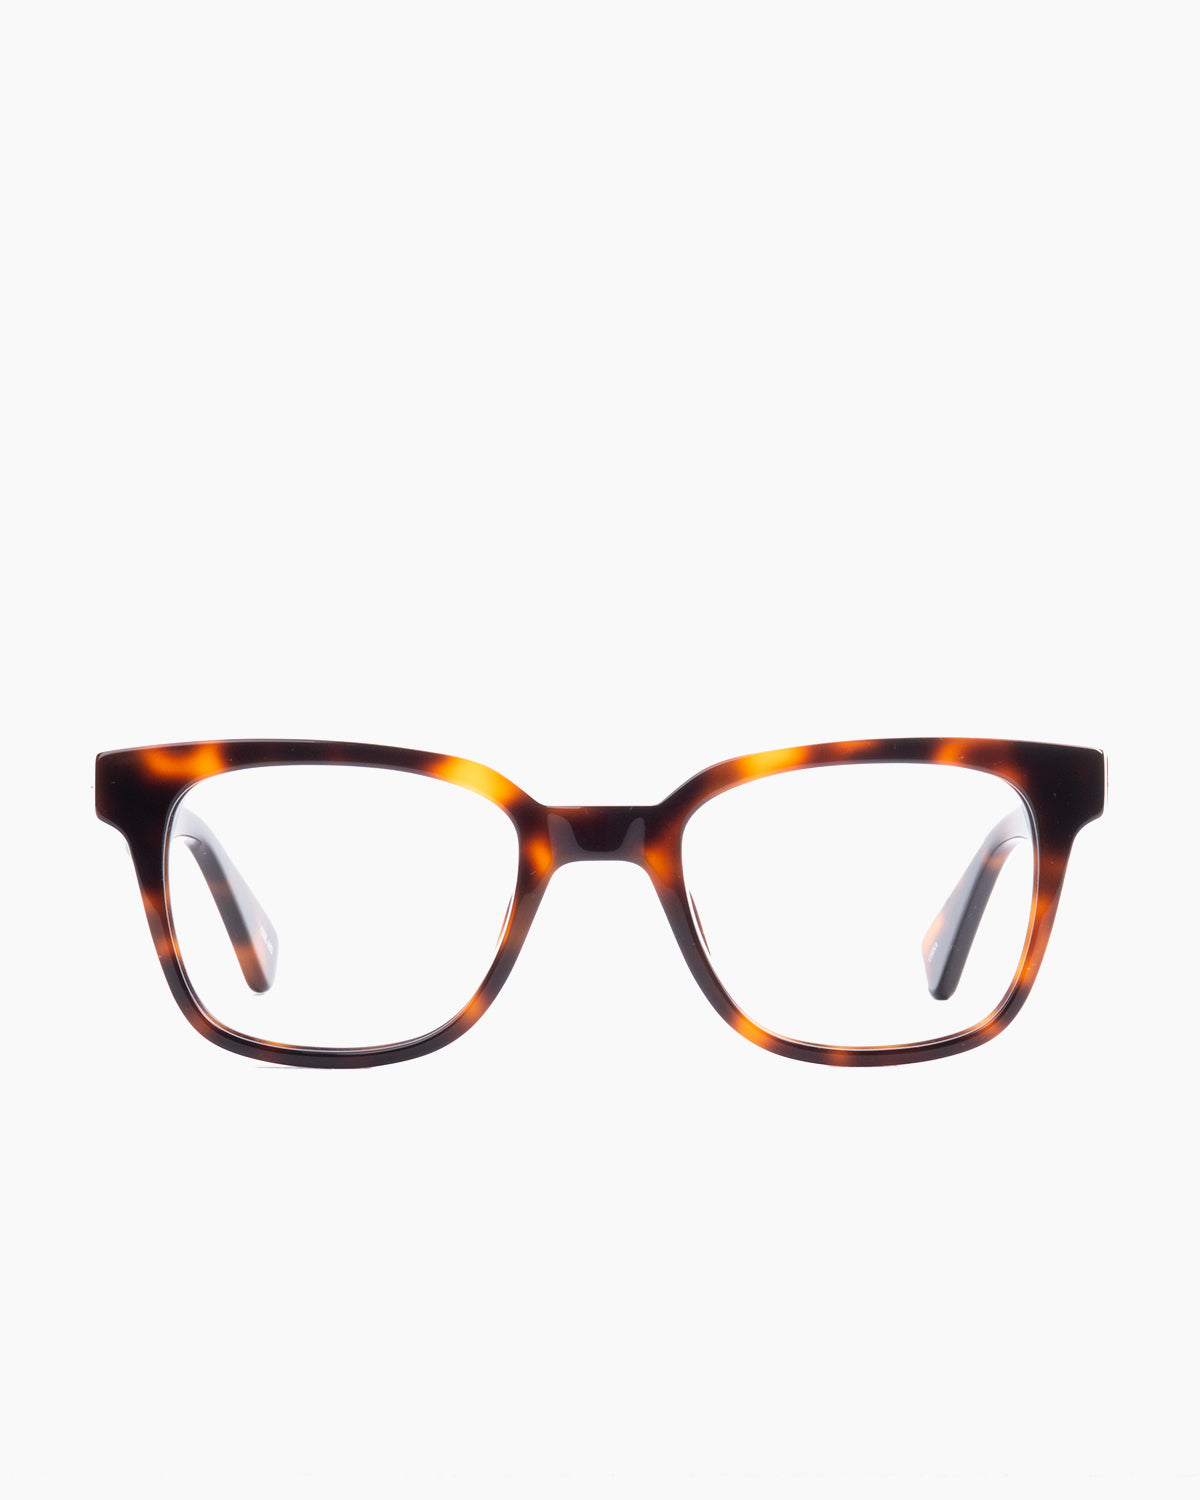 Evolve - Bennett - 102 | glasses bar:  Marie-Sophie Dion